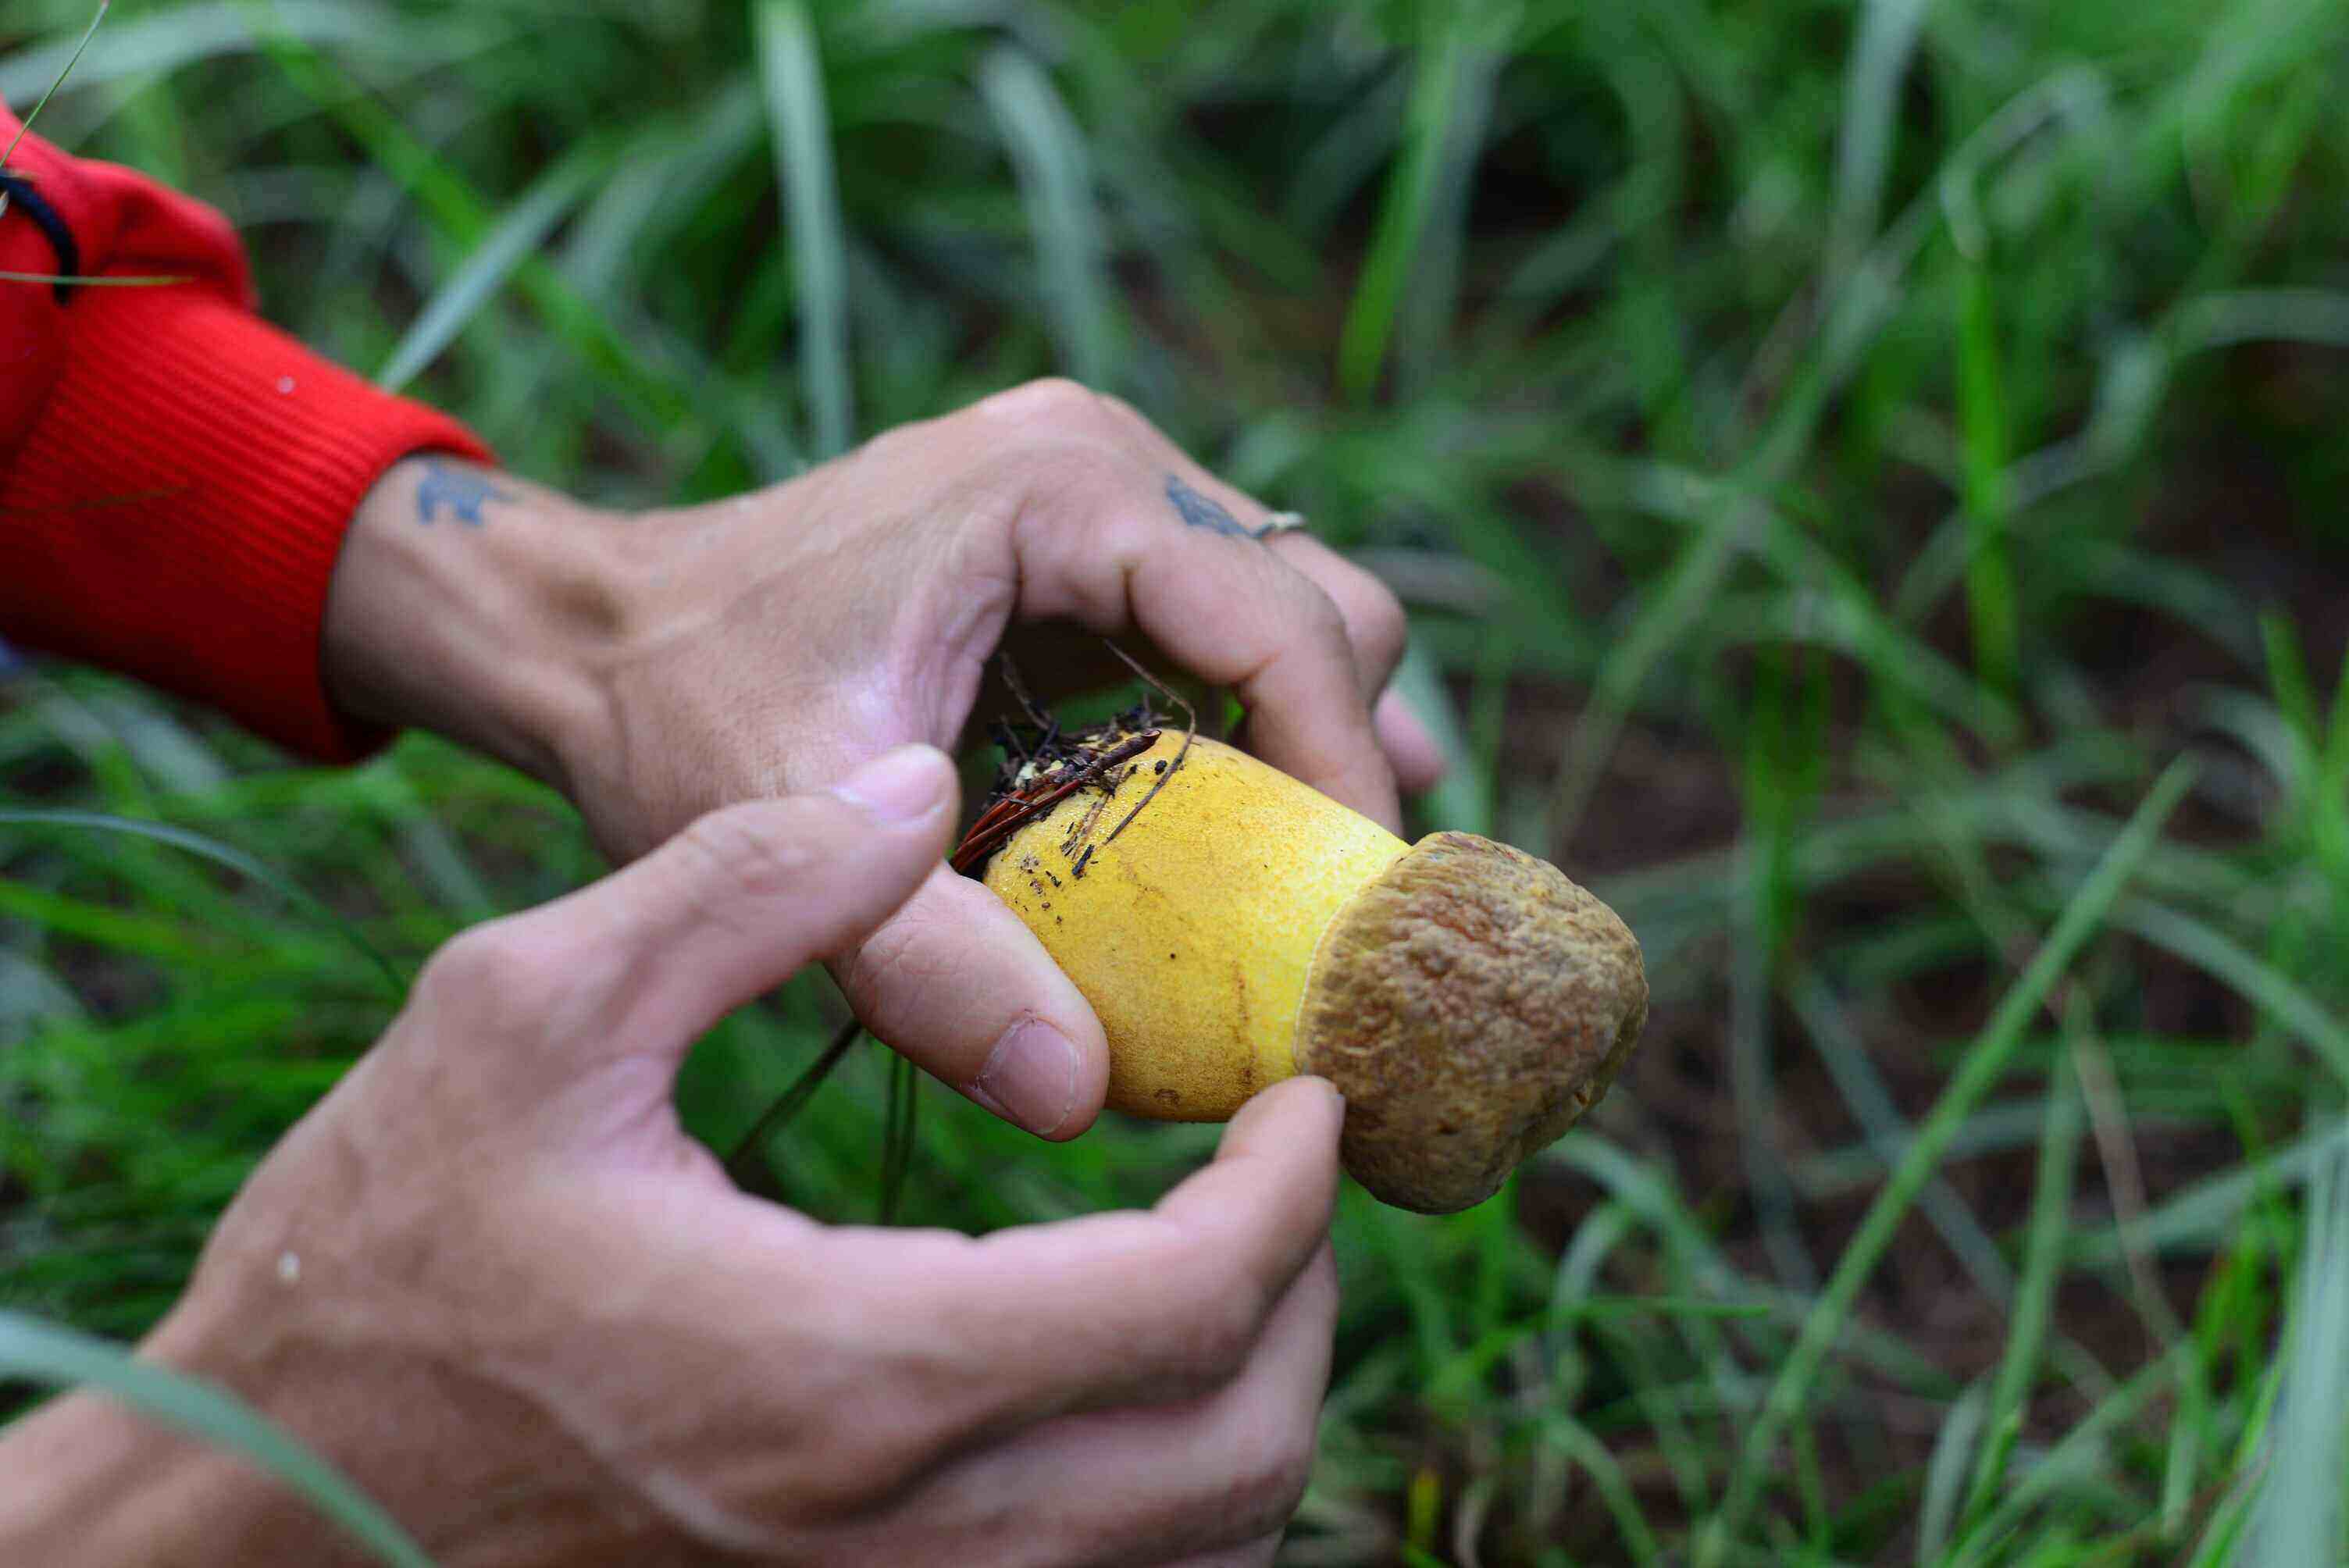 Người dân cũng chỉ hái những cây nấm vừa và lớn, chừa lại nấm mới và nấm nhỏ để cho những đợt thu hoạch tiếp theo. Ảnh: Minh Hậu